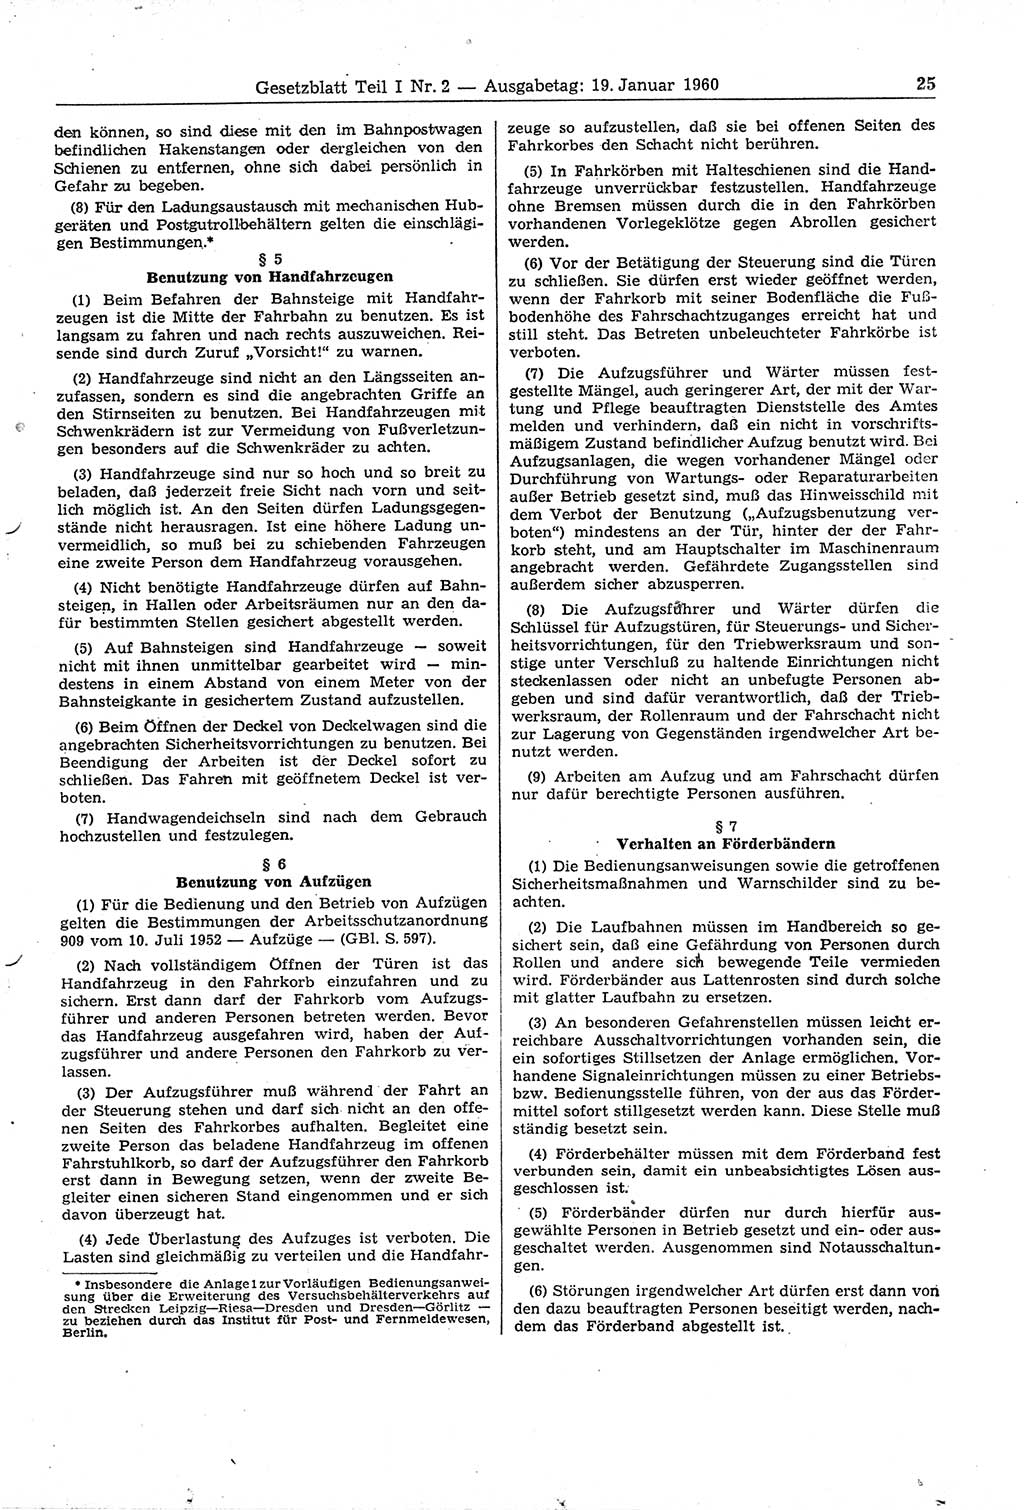 Gesetzblatt (GBl.) der Deutschen Demokratischen Republik (DDR) Teil Ⅰ 1960, Seite 25 (GBl. DDR Ⅰ 1960, S. 25)